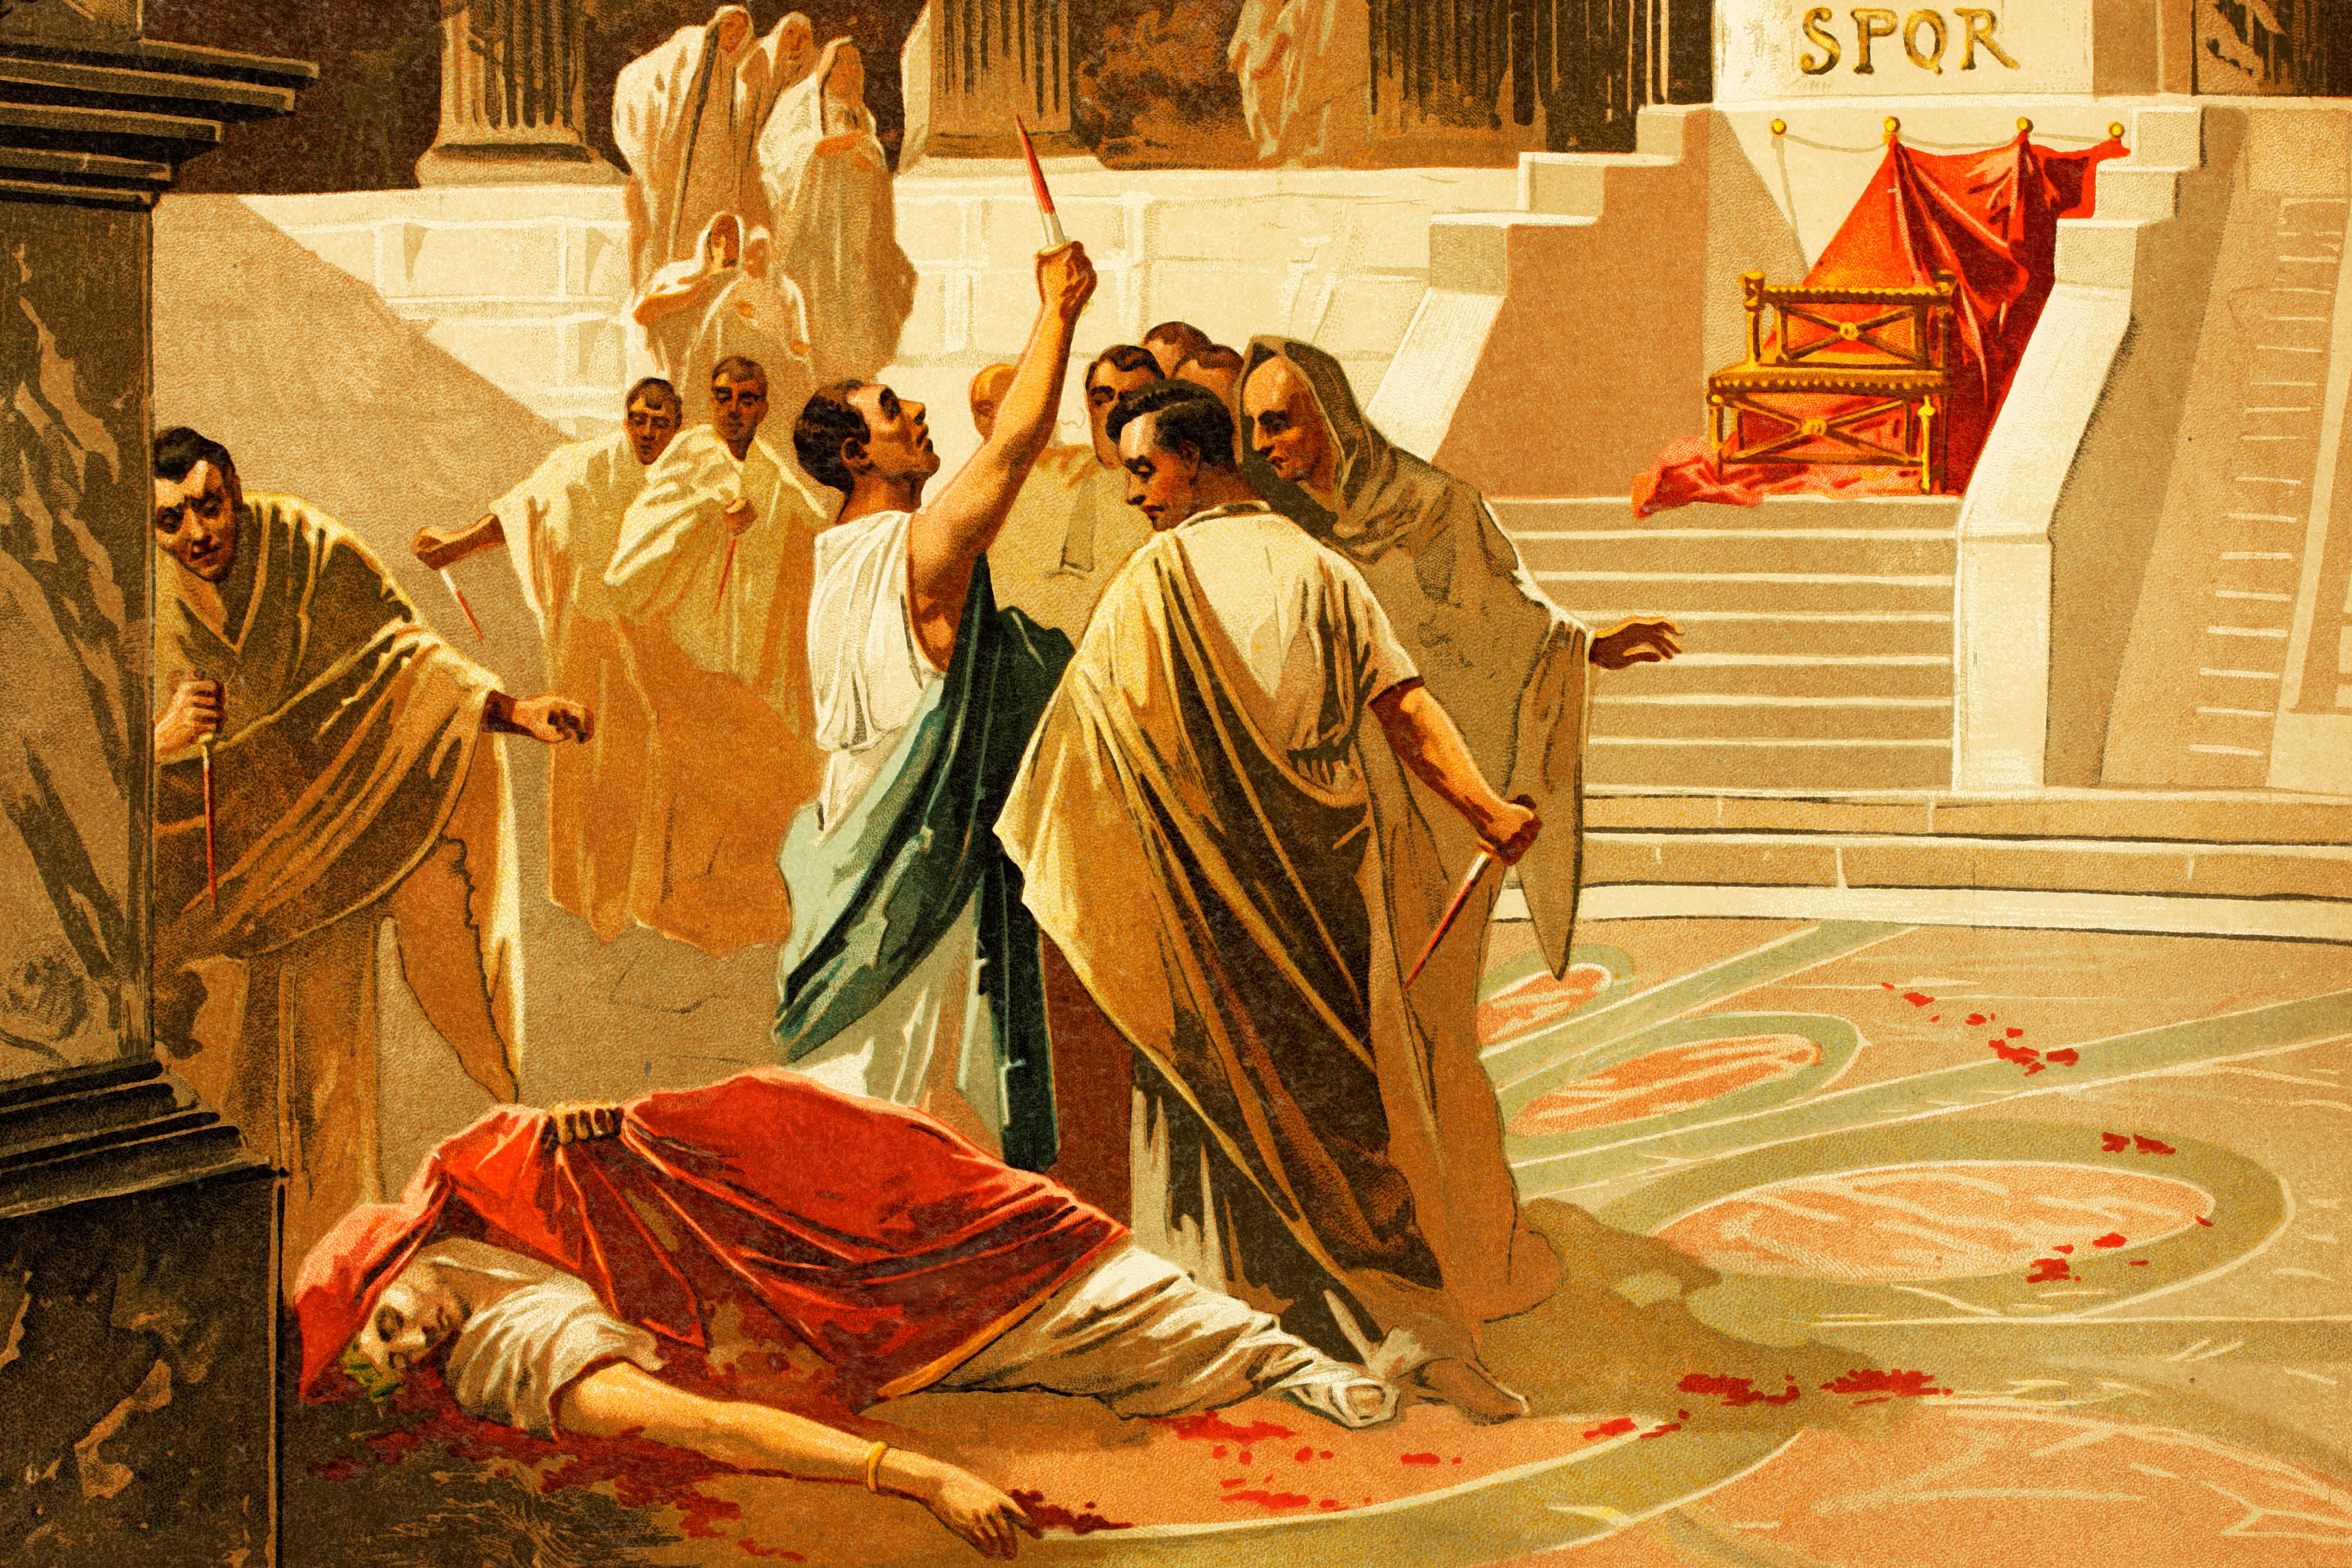 Julius Caesar, Ides of March